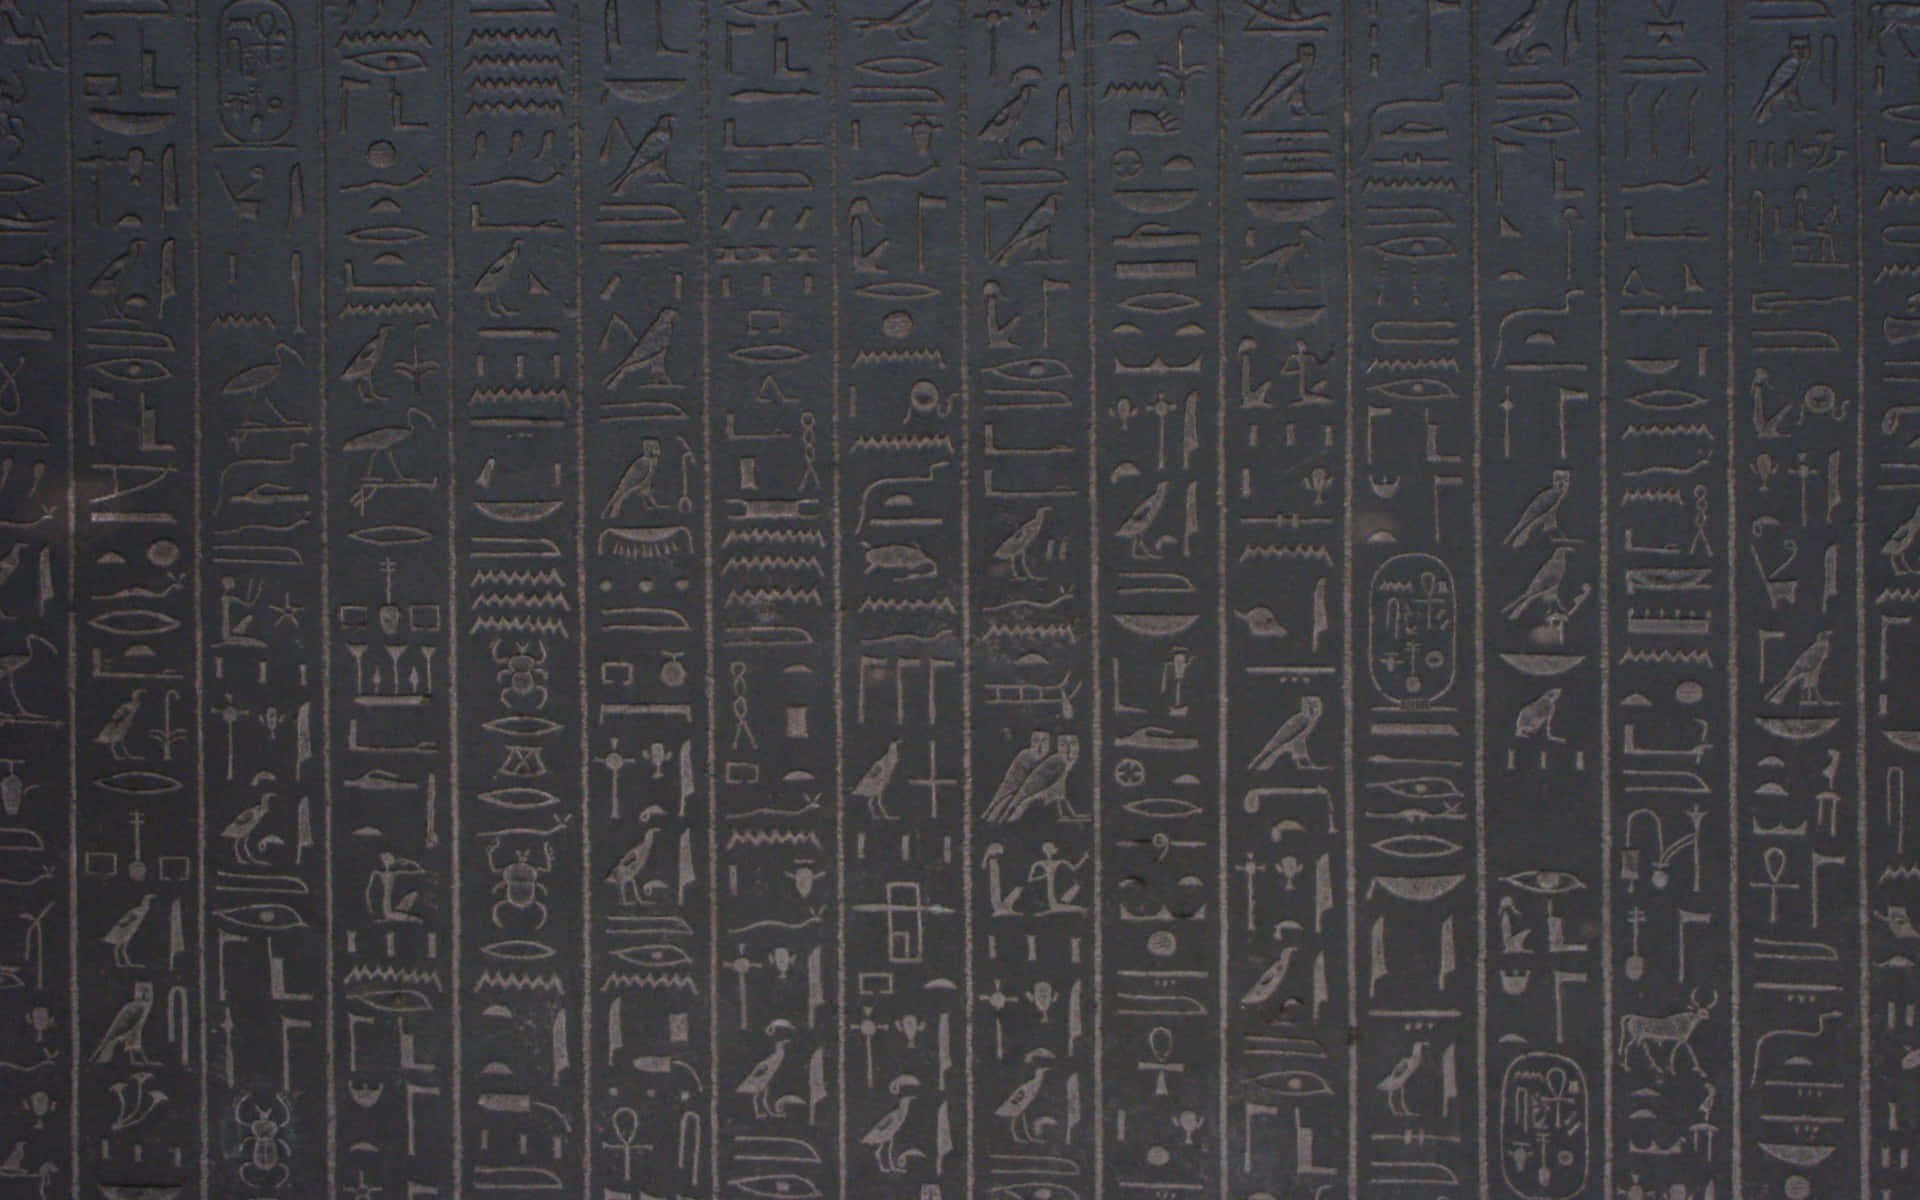 Lagran Esfinge En Giza, Egipto.